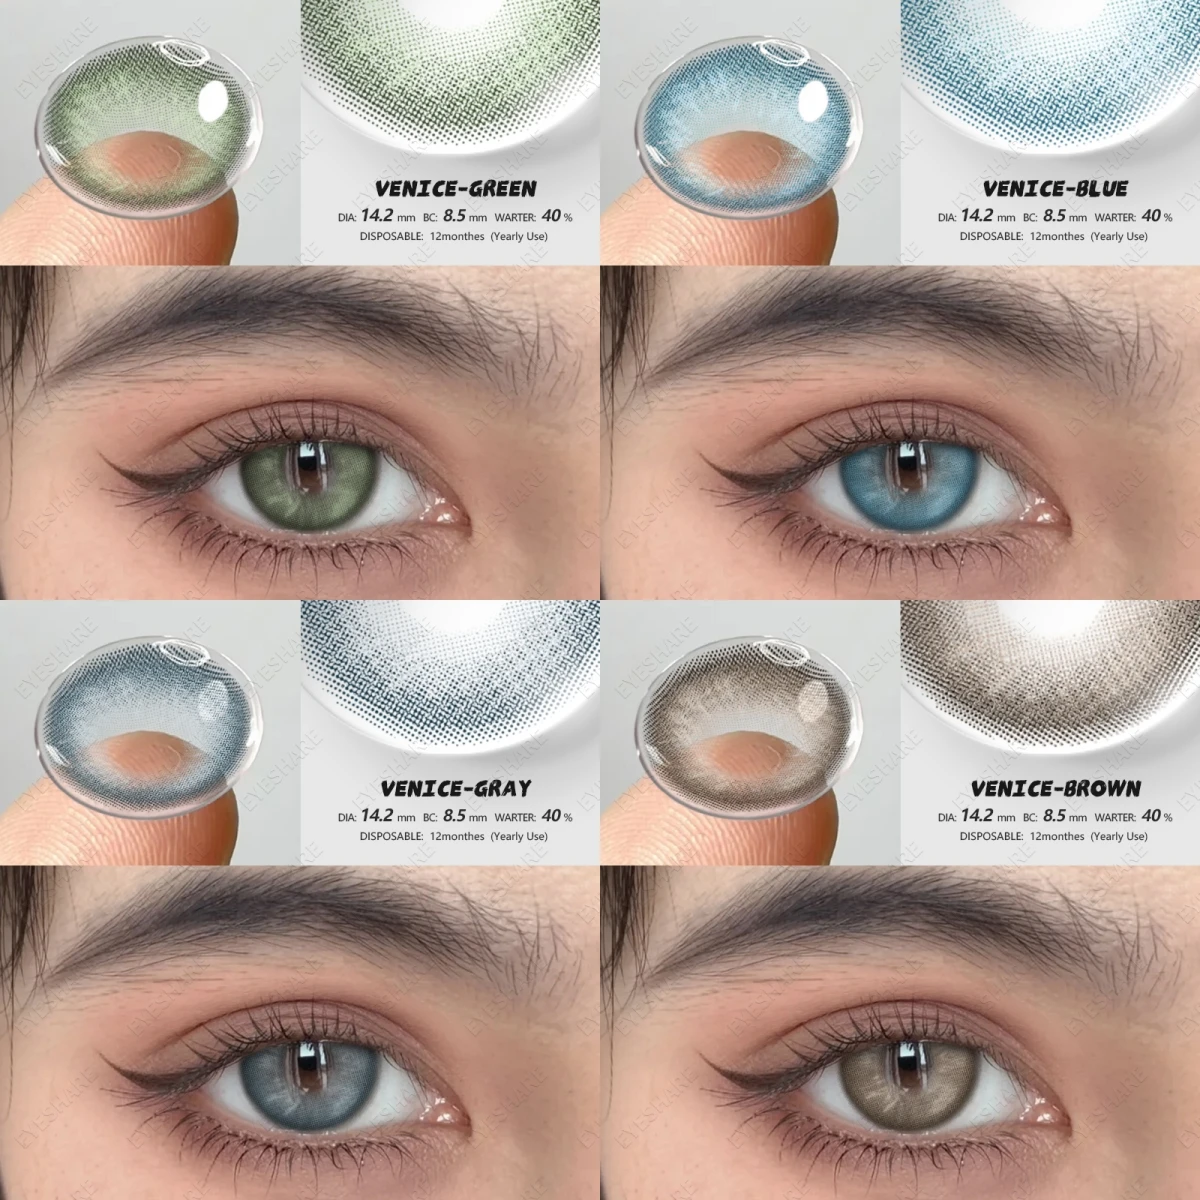 

EYESHARE 1 Новая пара цветных контактных линз для глаз Естественно синие контактные линзы коричневые контактные линзы Цветные красивые зрачки года